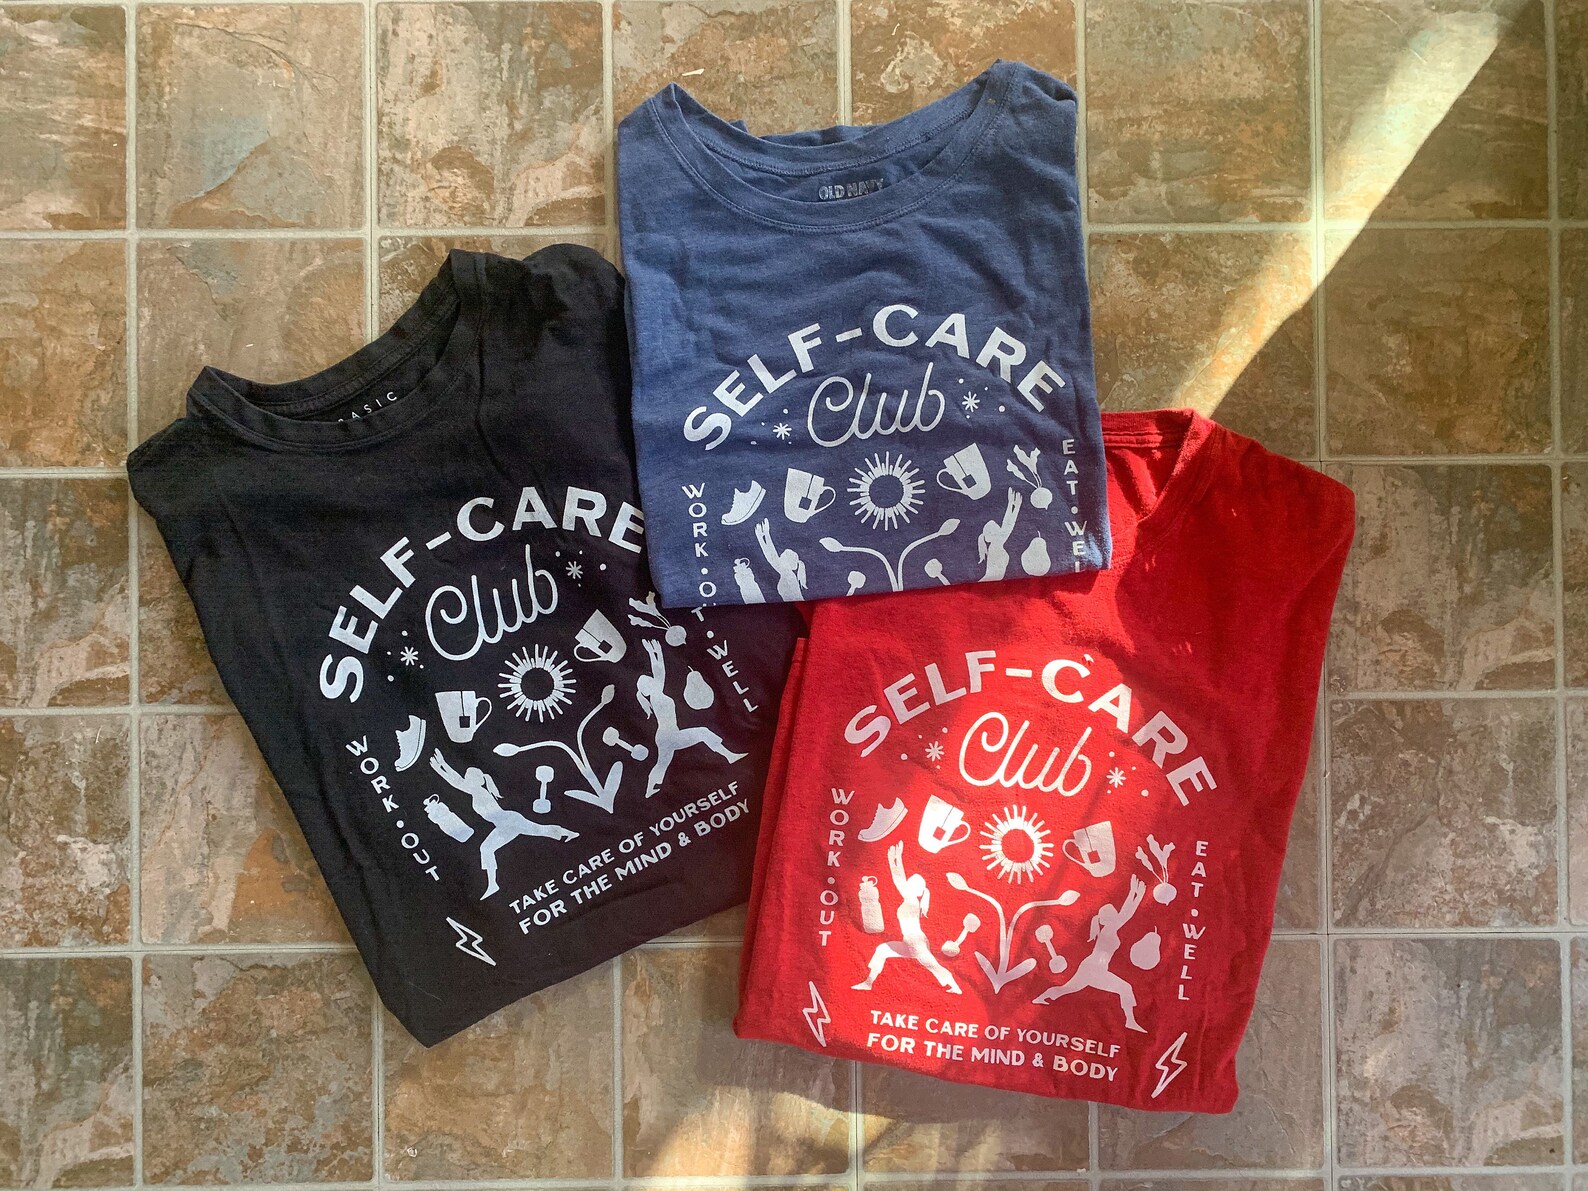 Three t - shirts that say self care club.